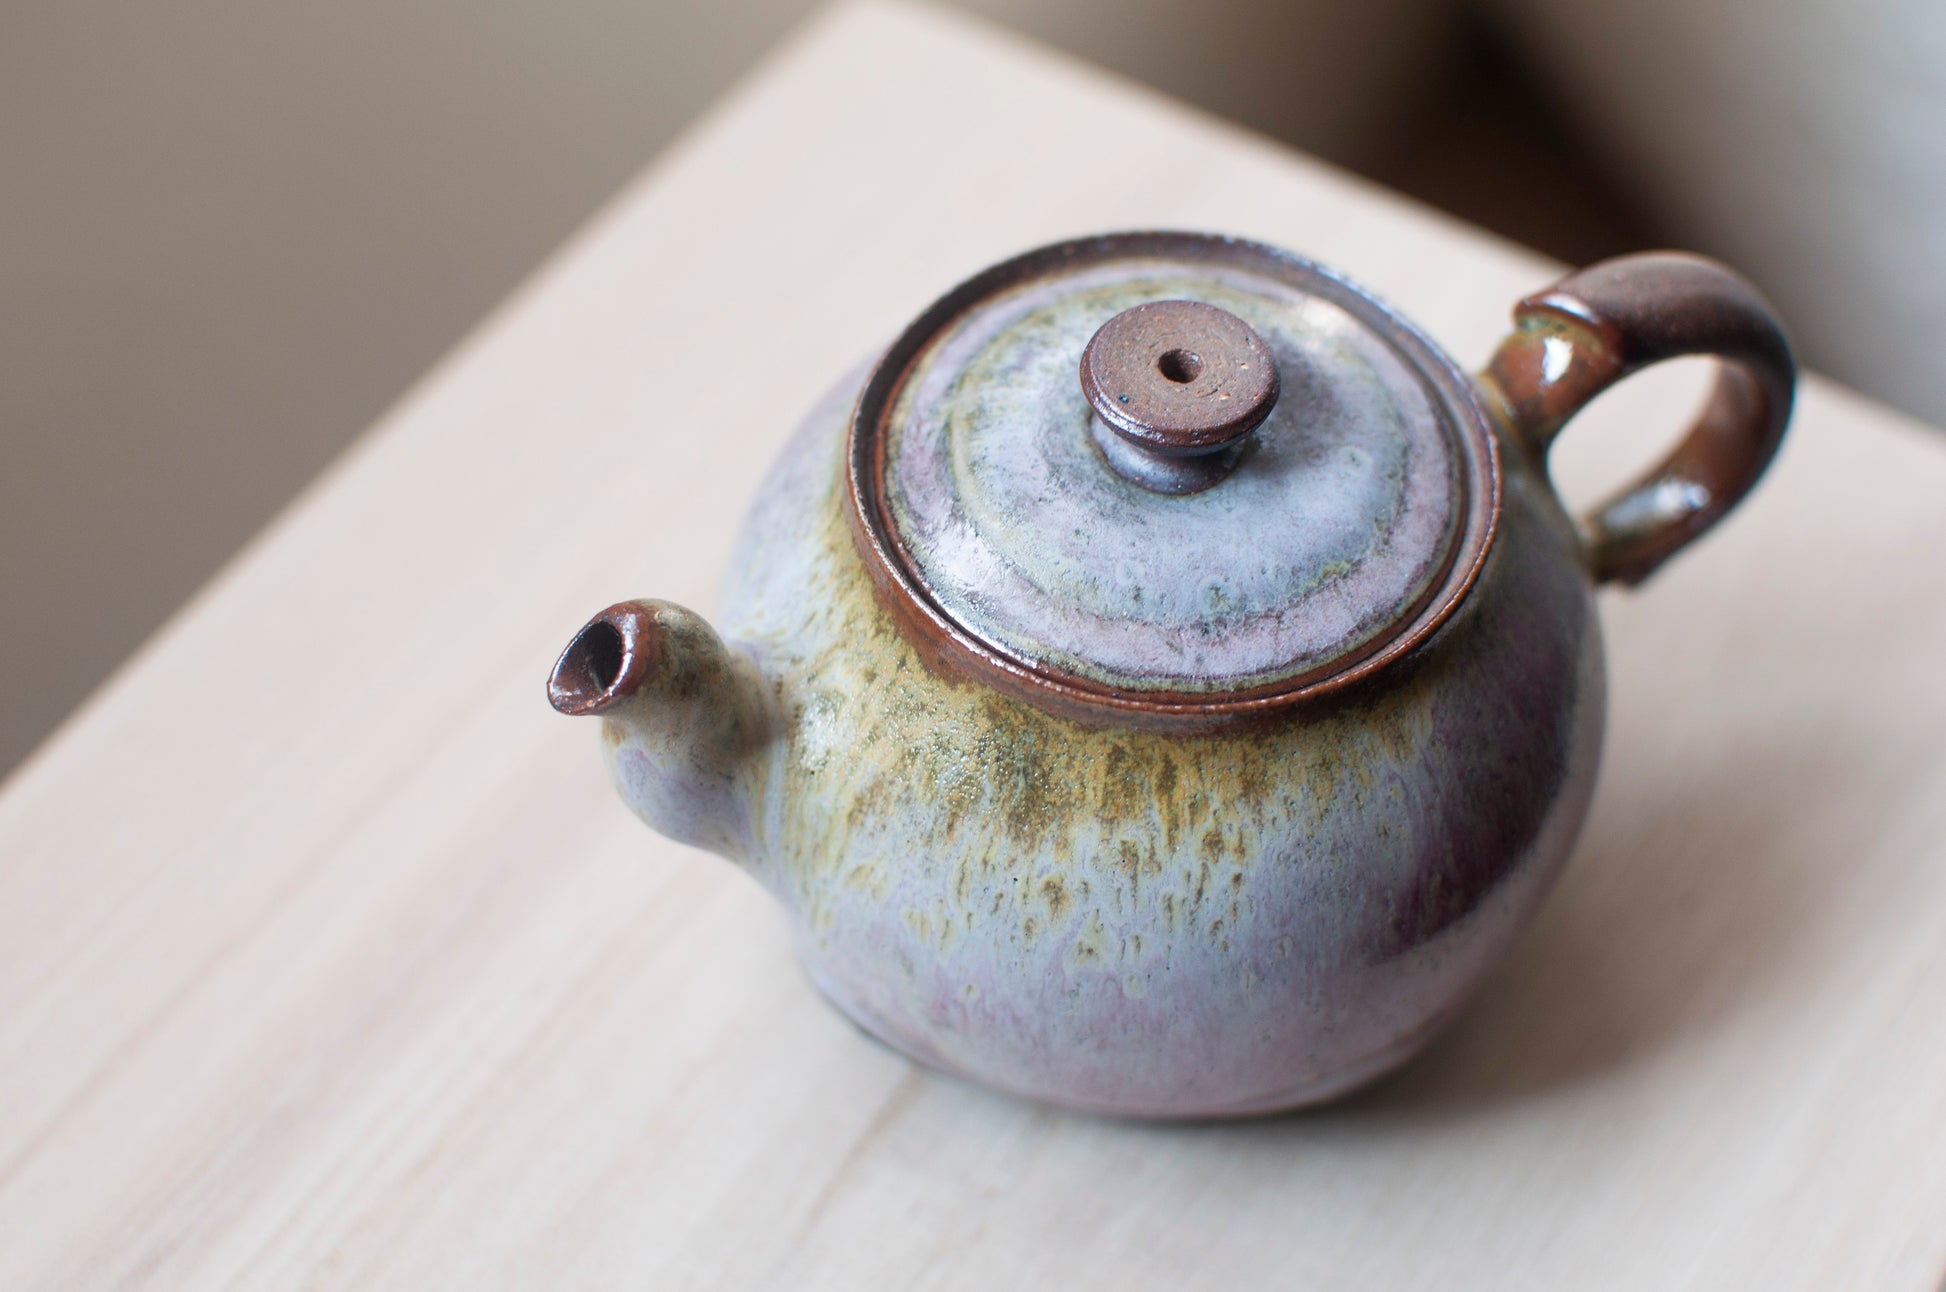 Glazed Ceramic Teapot from Taiwan